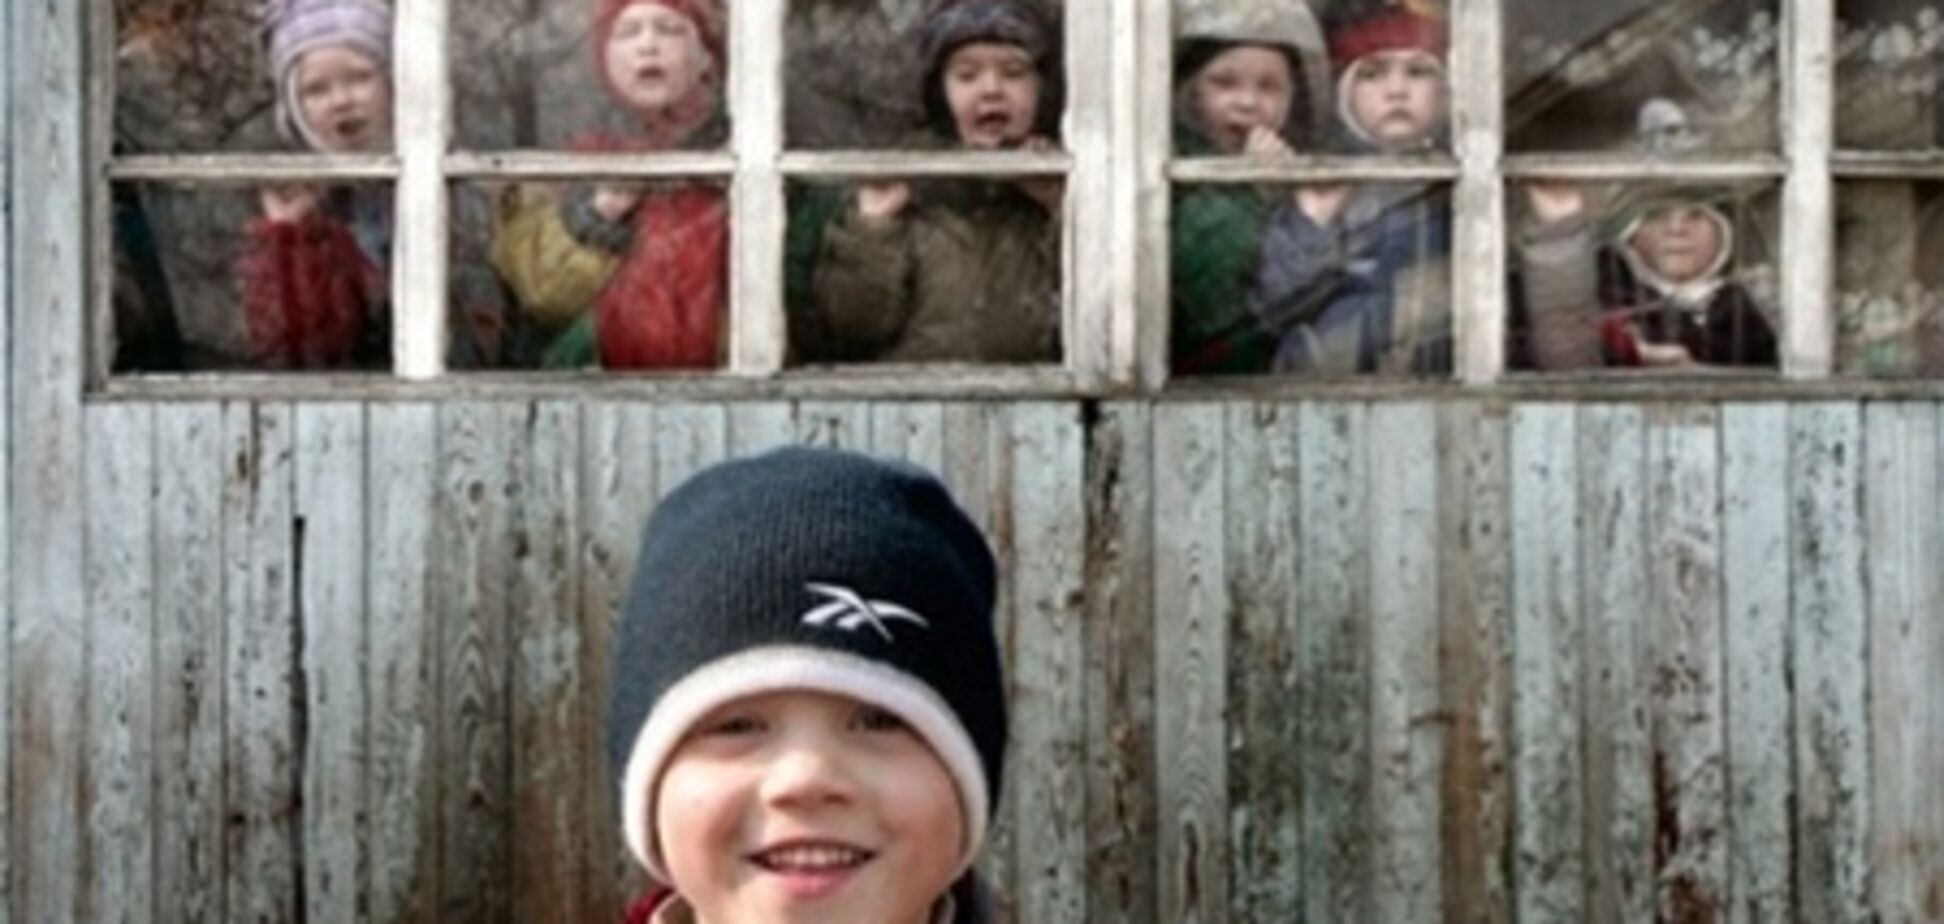 Рада запретила иностранцам усыновлять украинских детей